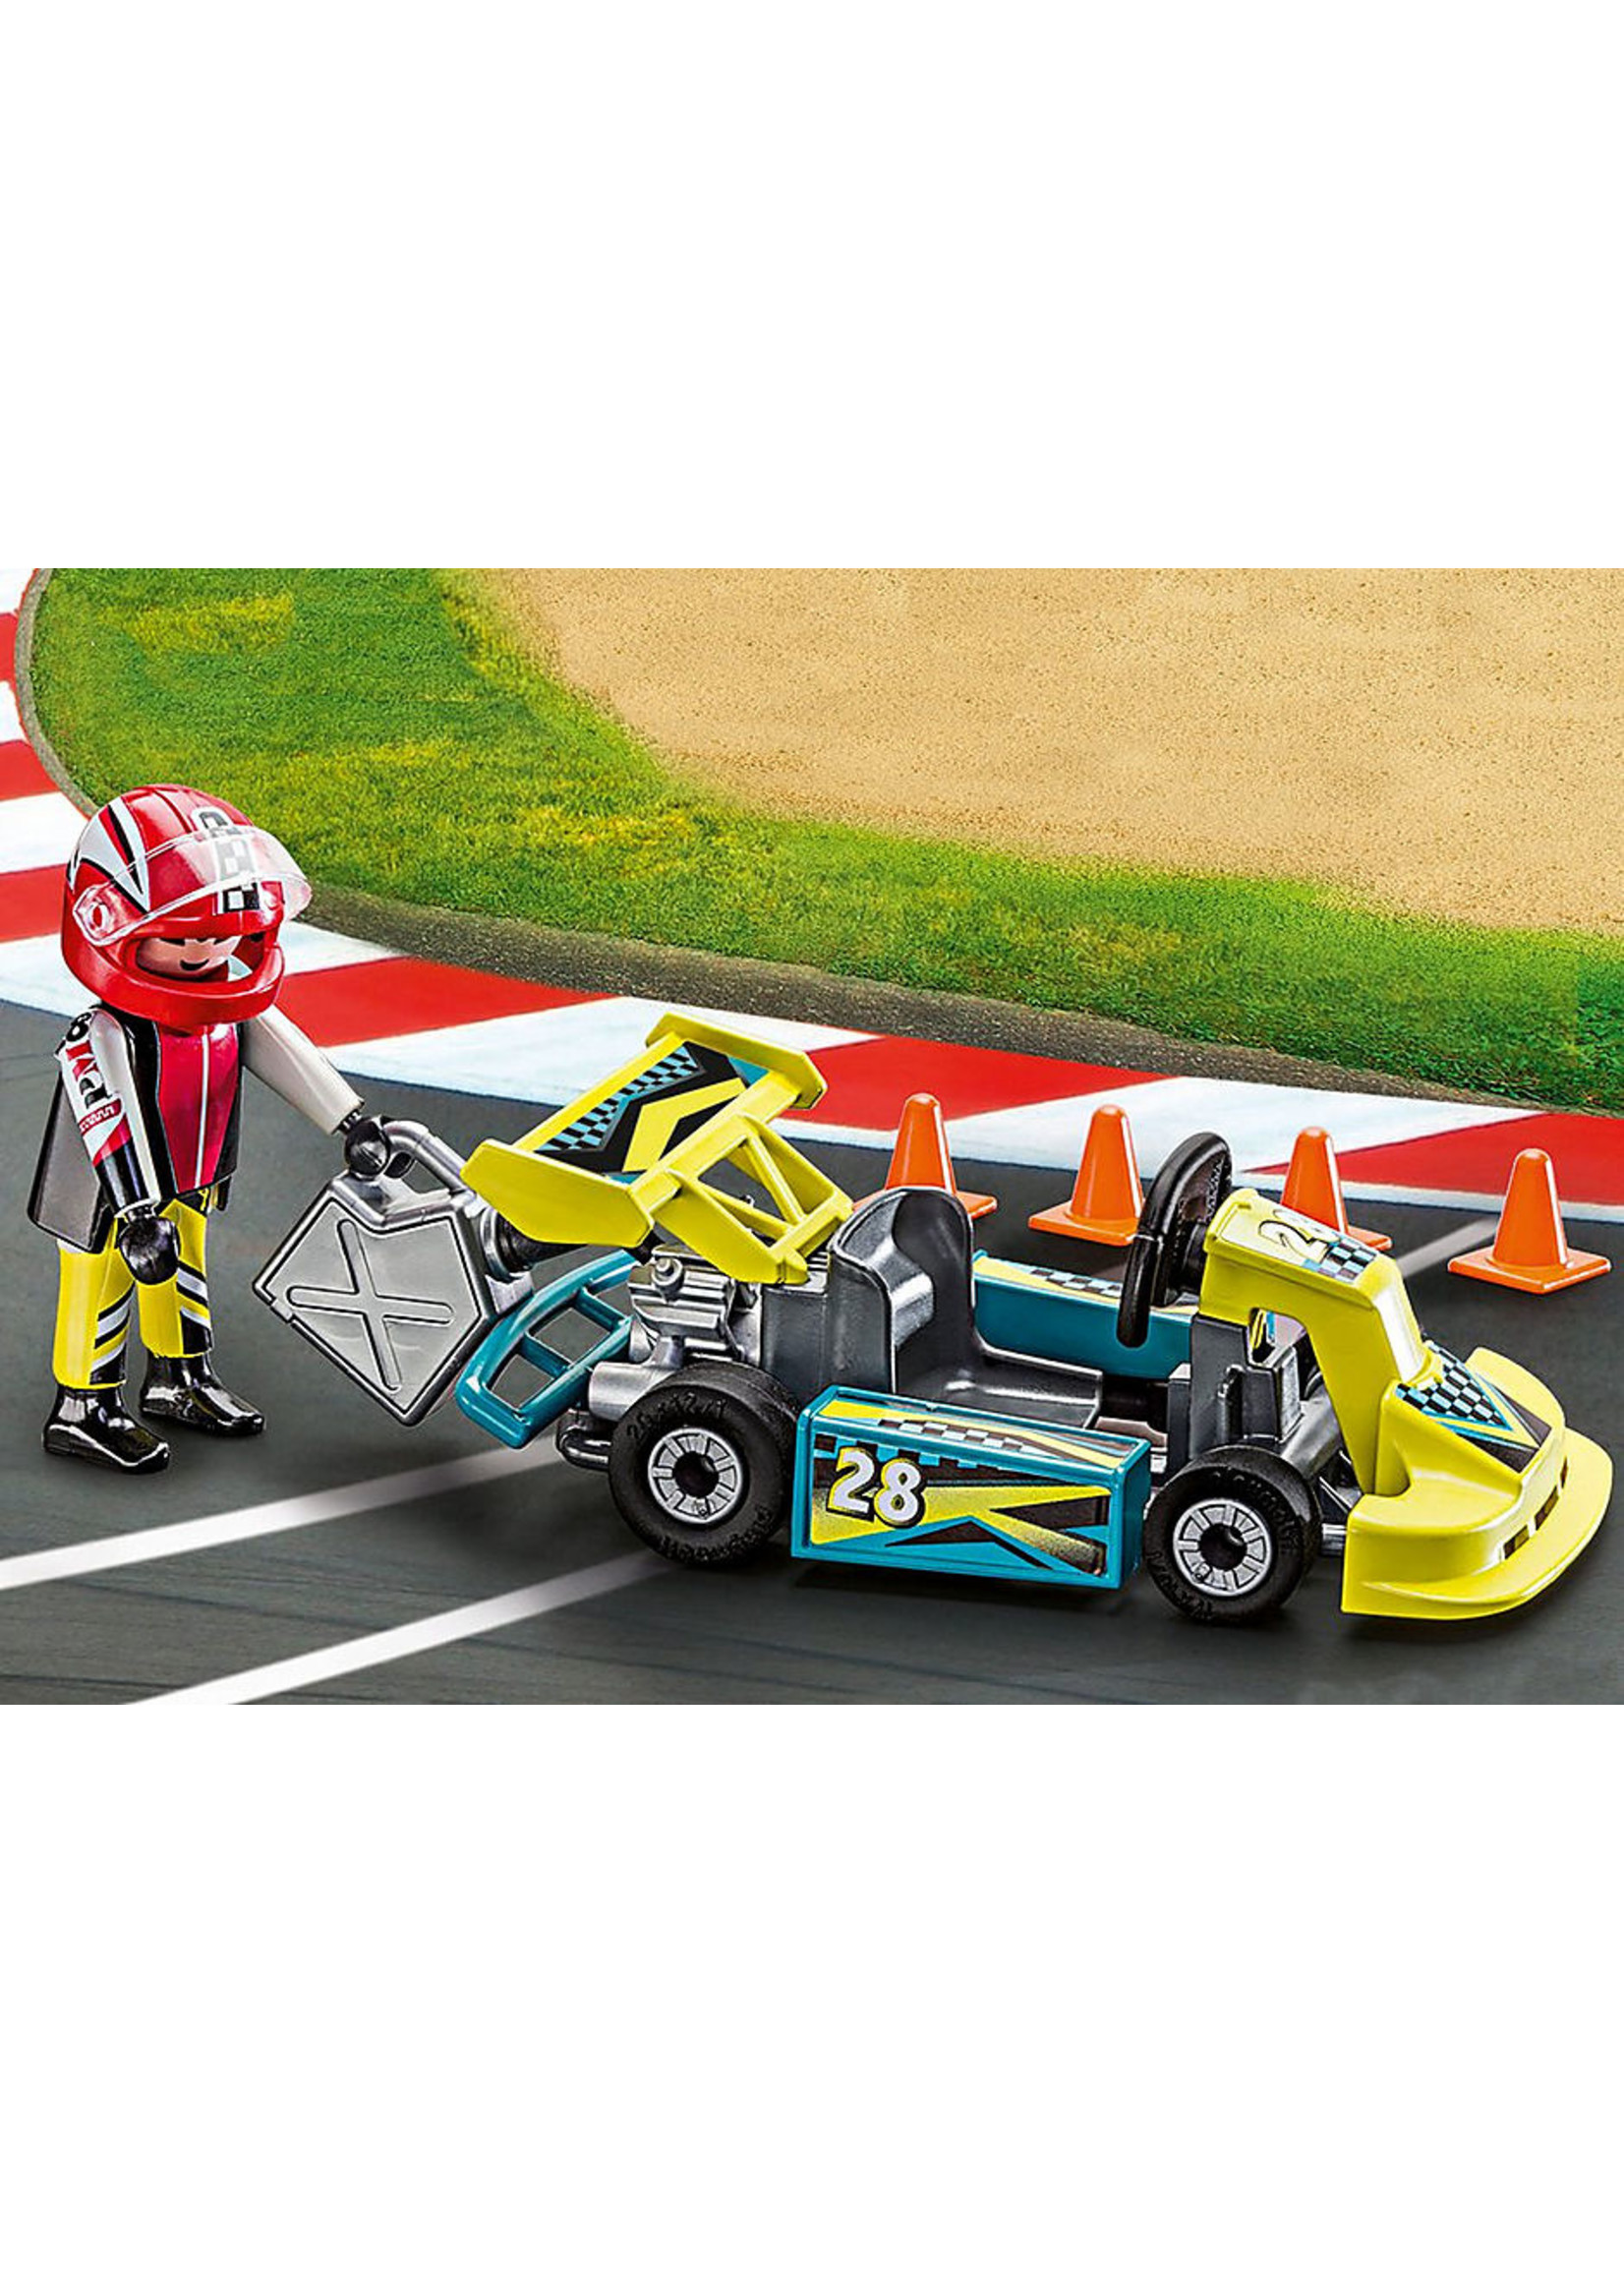 Playmobil 9322 - Carry Case - Go-Kart Racer